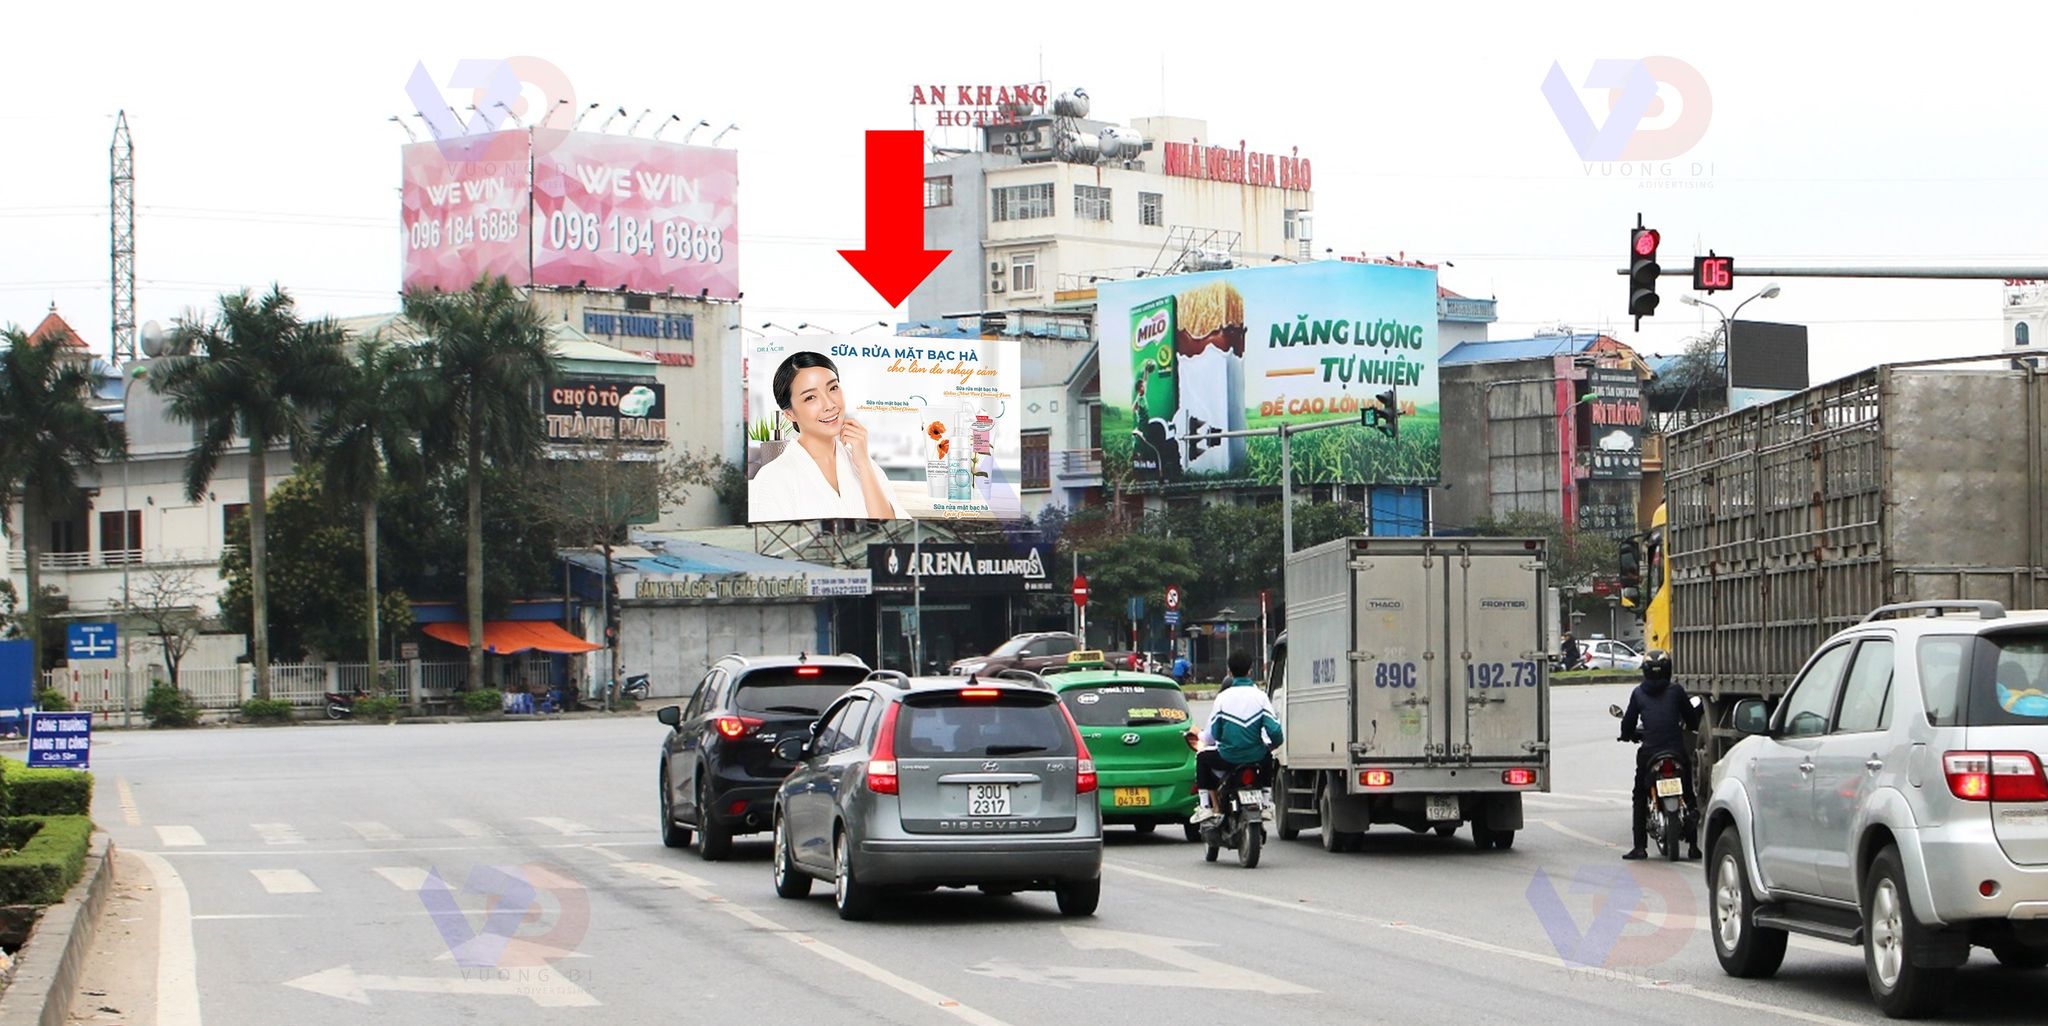 Bảng quảng cáo tại Vòng xoay Tháp Đồng Hồ, TP Nam Định, Nam Định